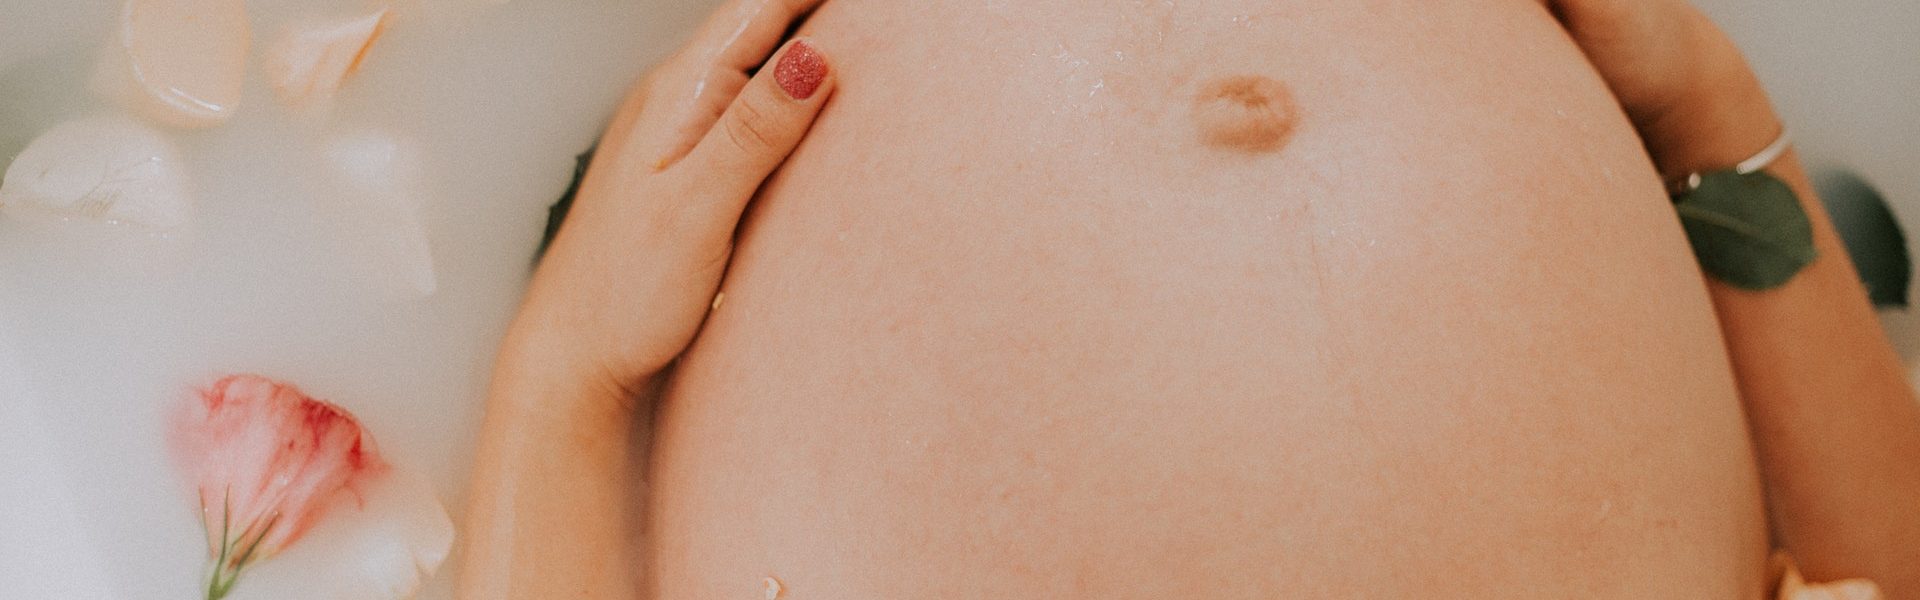 Po co wykonuje się USG w ciąży?